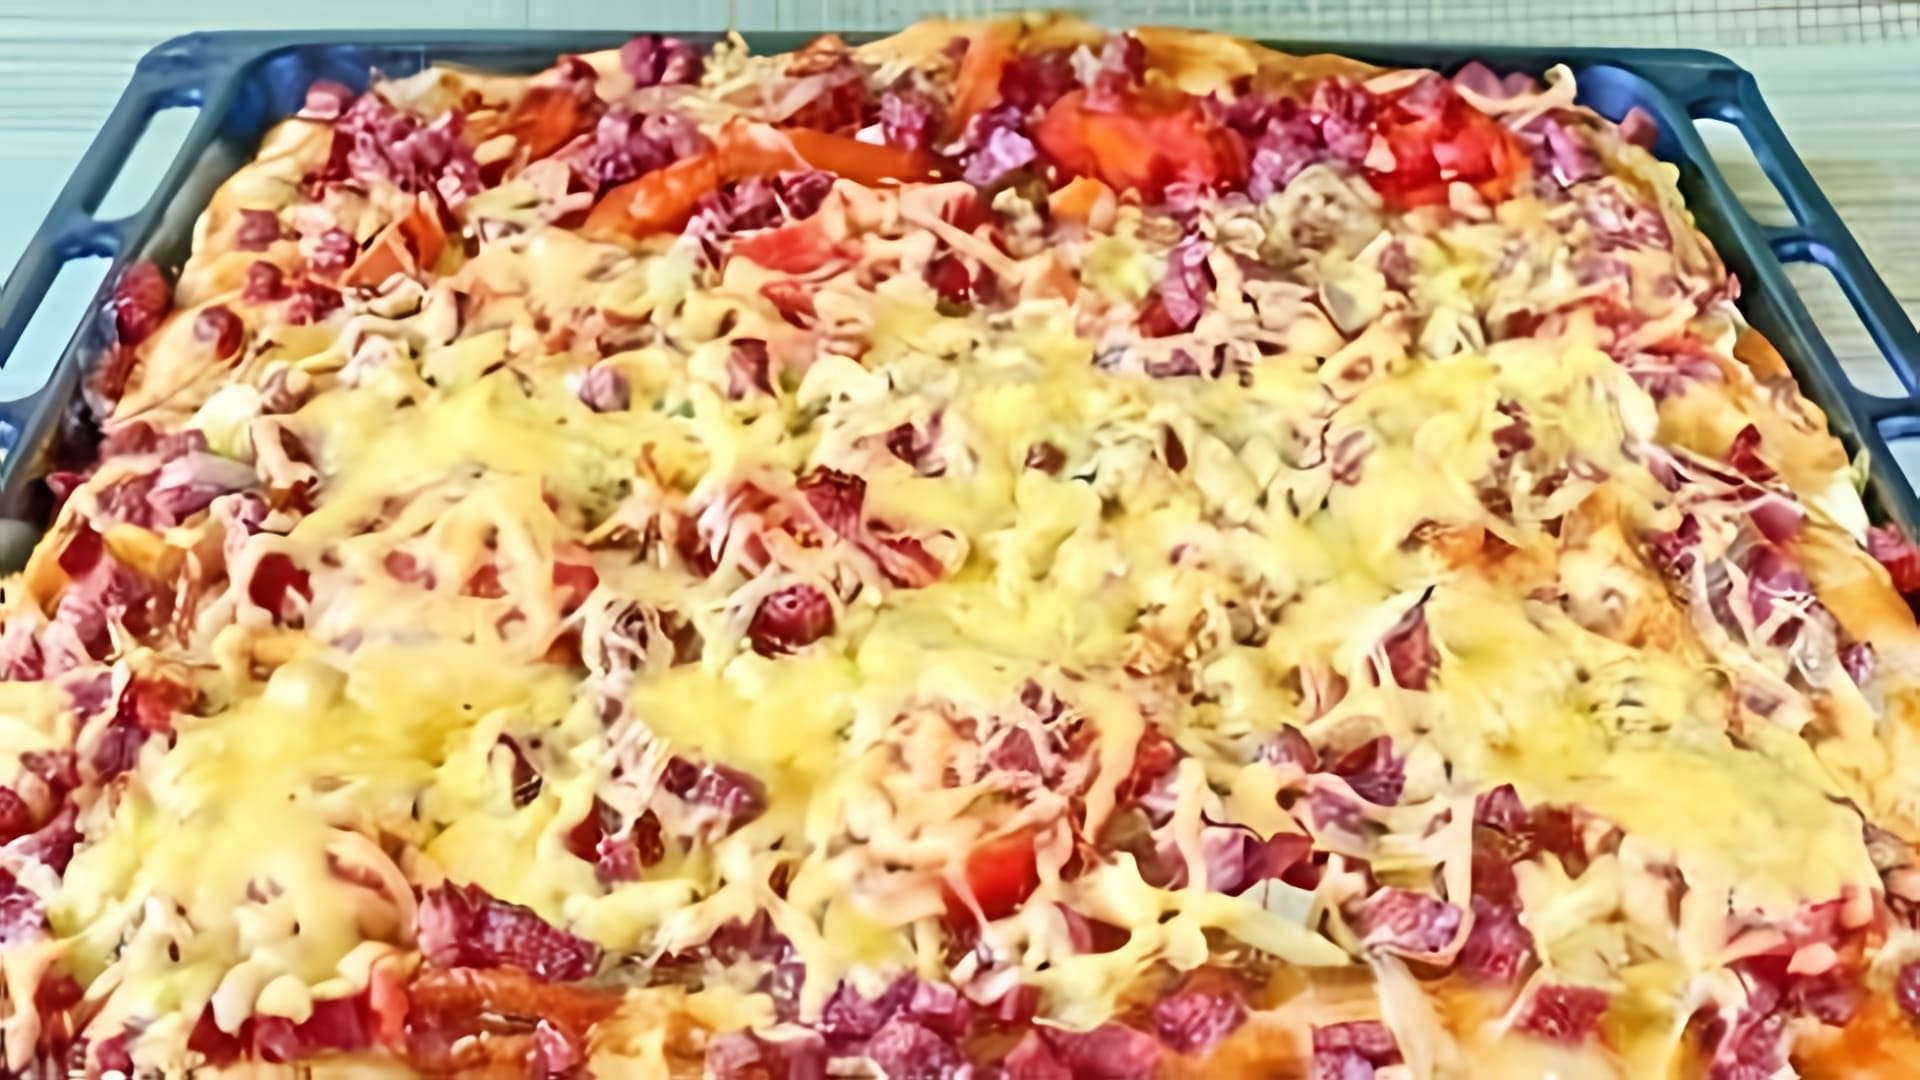 Рецепт пиццы с колбасой, сыром и помидорами - это видео-ролик, который показывает, как приготовить вкусную и ароматную пиццу с использованием колбасы, сыра и помидоров